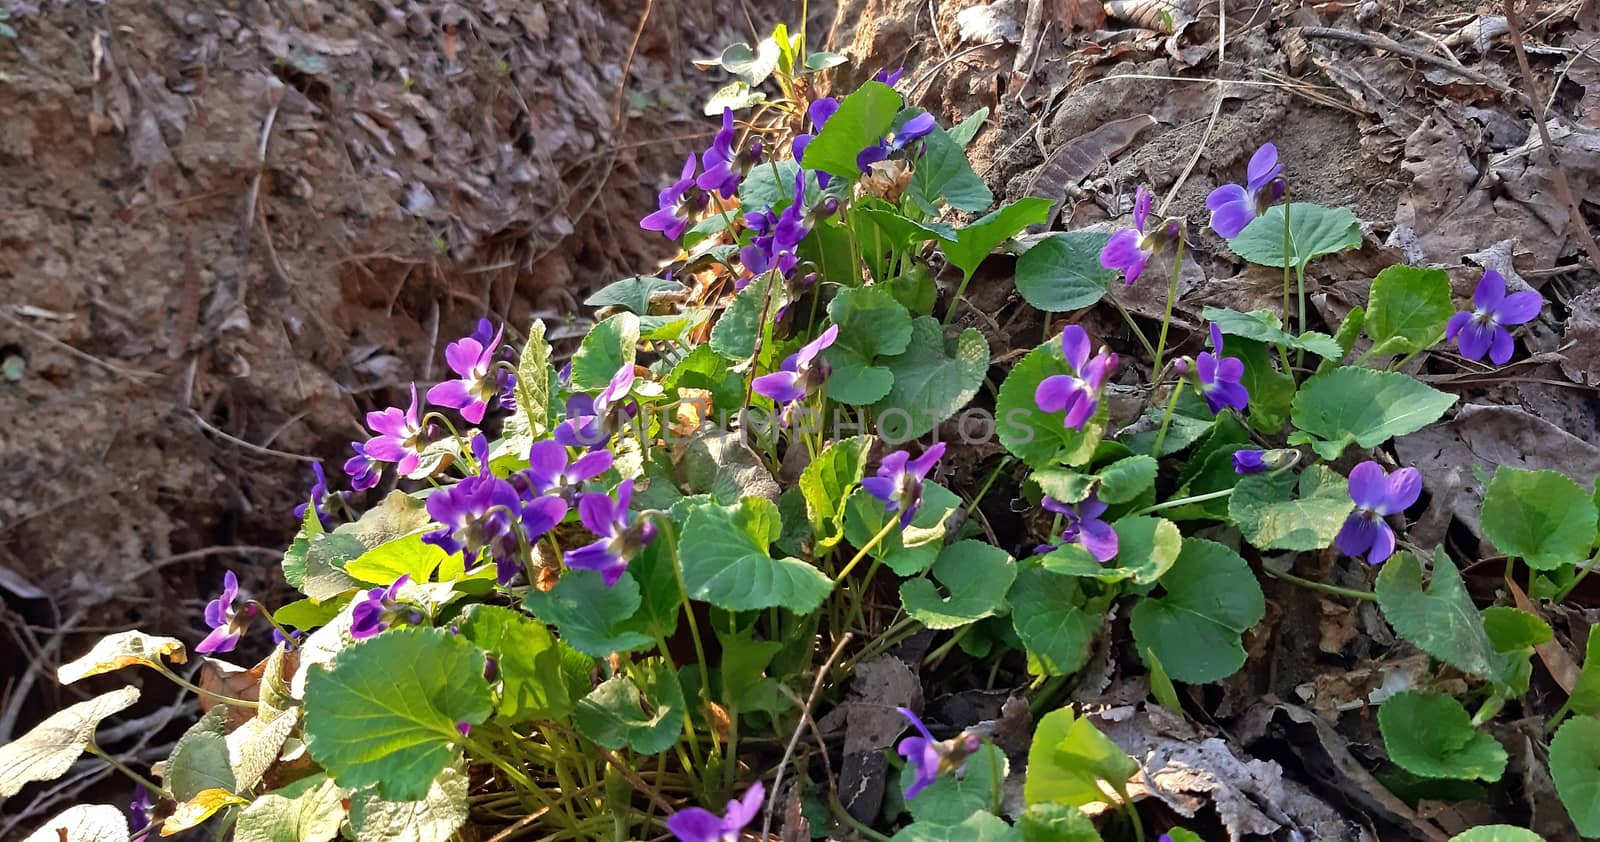 Fragrant violets in bloom in the spring.